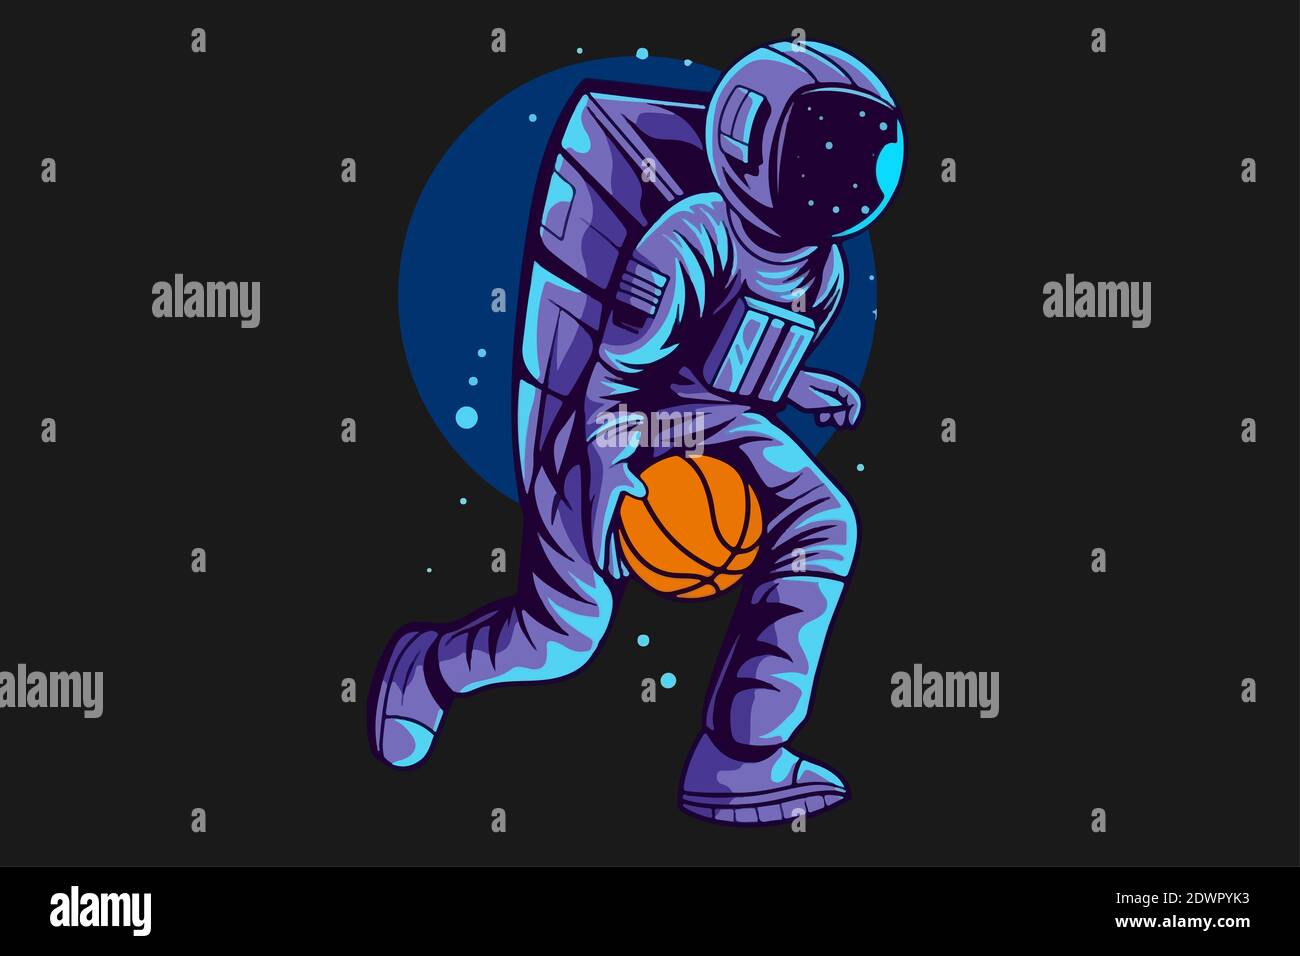 Illustrazione di un astronauta che gioca a basket nello spazio su uno sfondo scuro Foto Stock